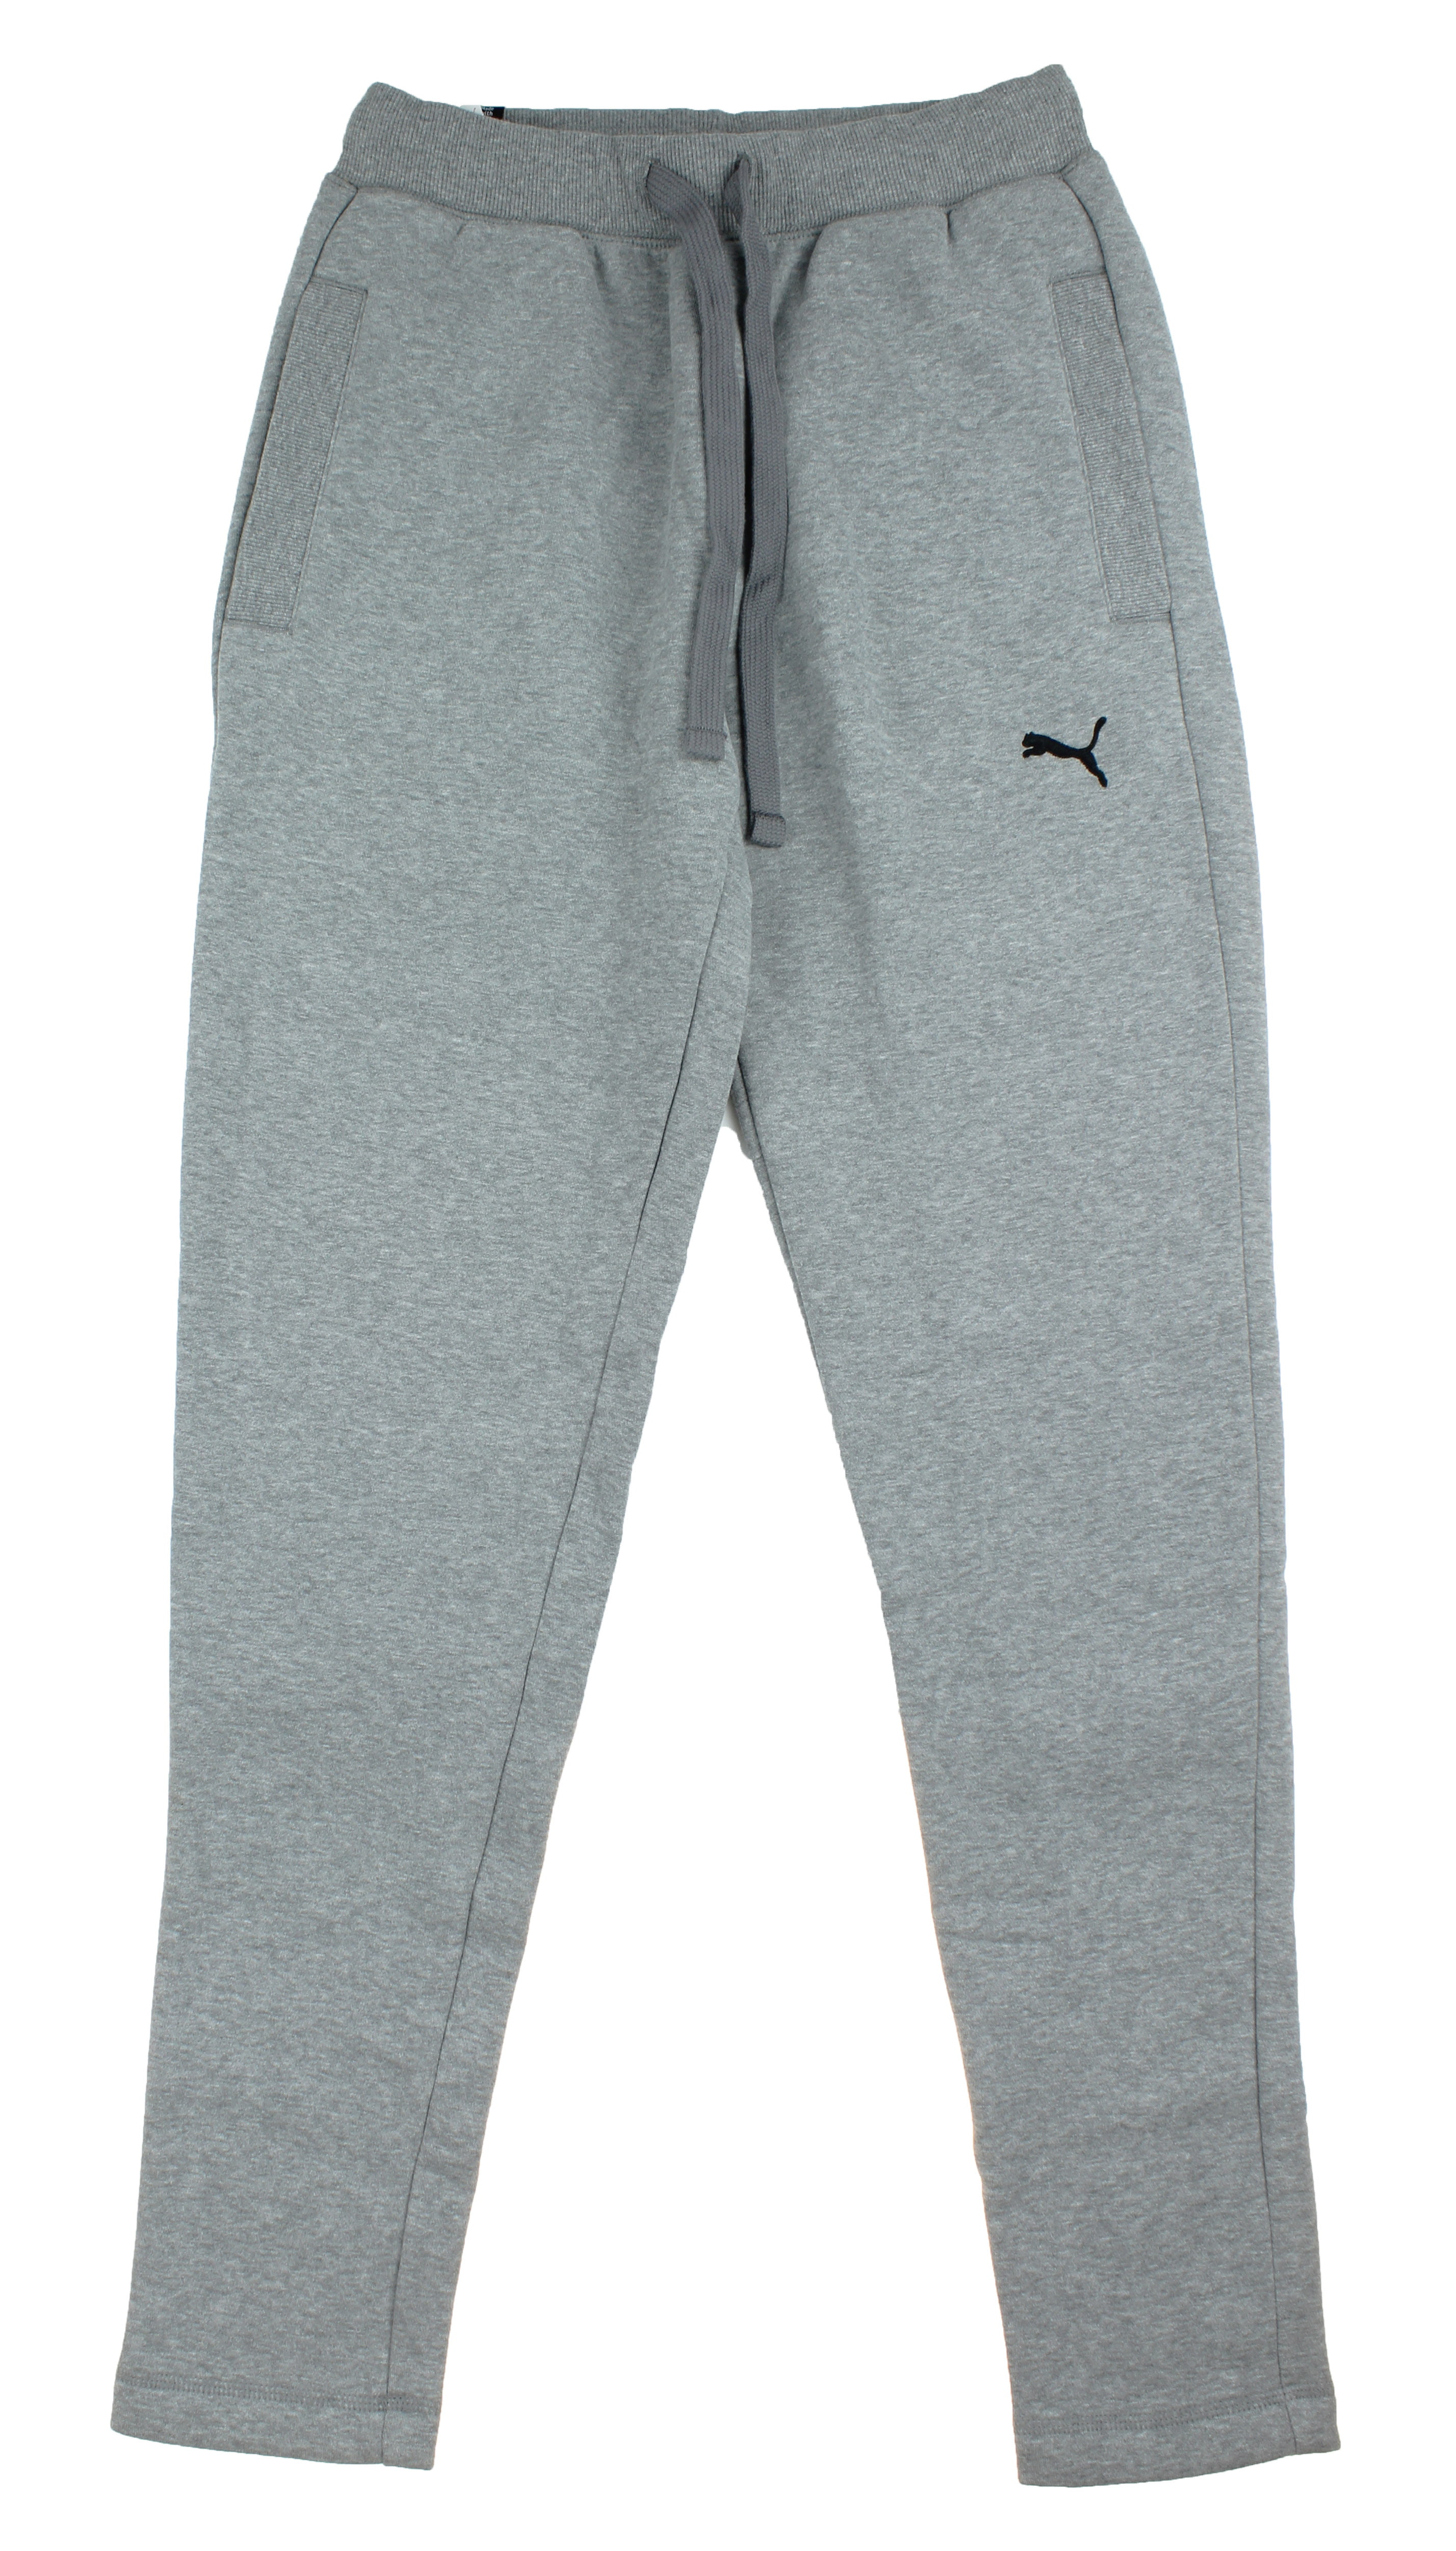 grey puma sweatpants